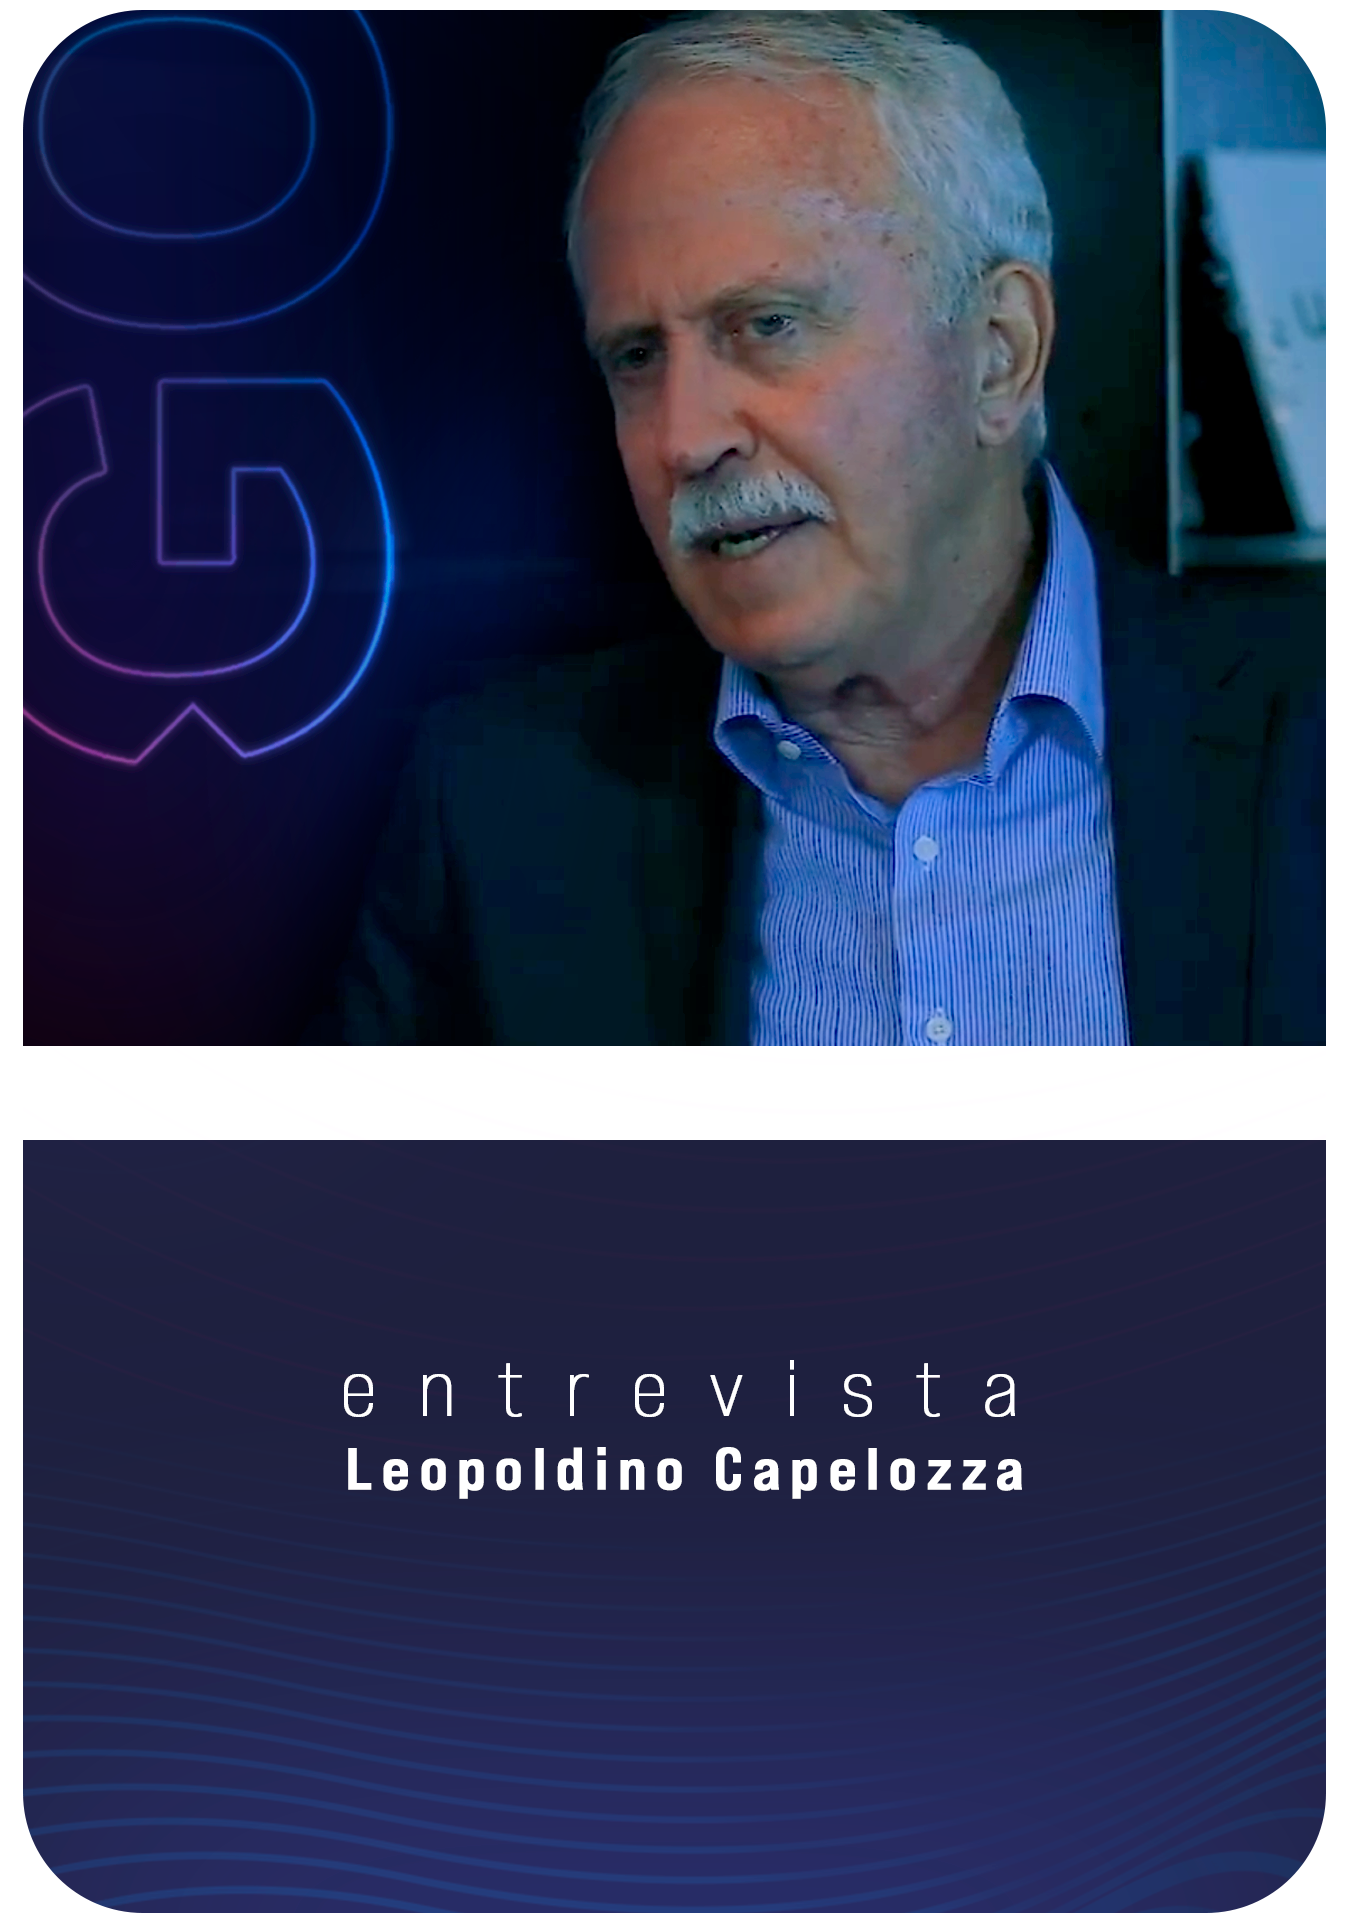 Dr. Leopoldino Capelozza Filho